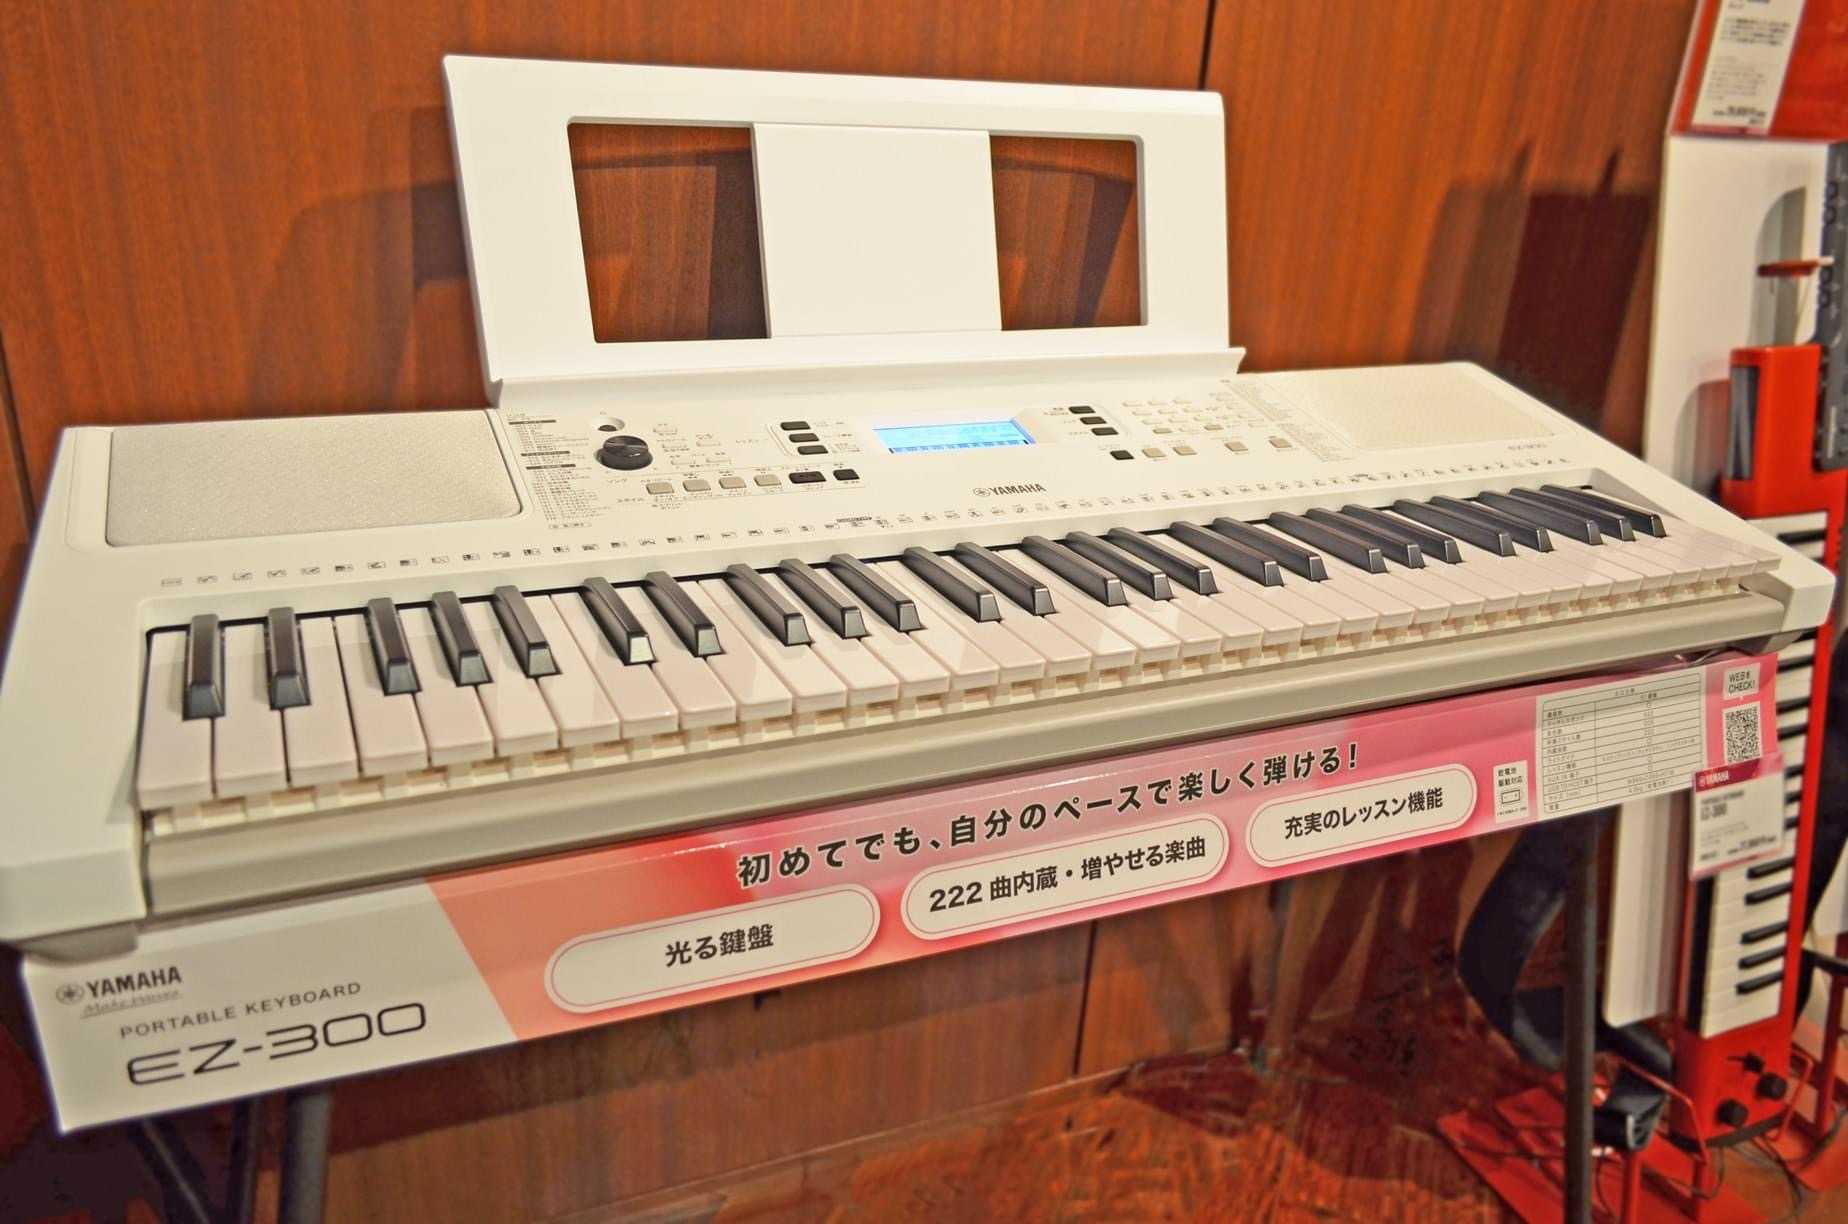 ヤマハ ポータブルキーボード『EZ-300』が明日12/10(木)発売となります